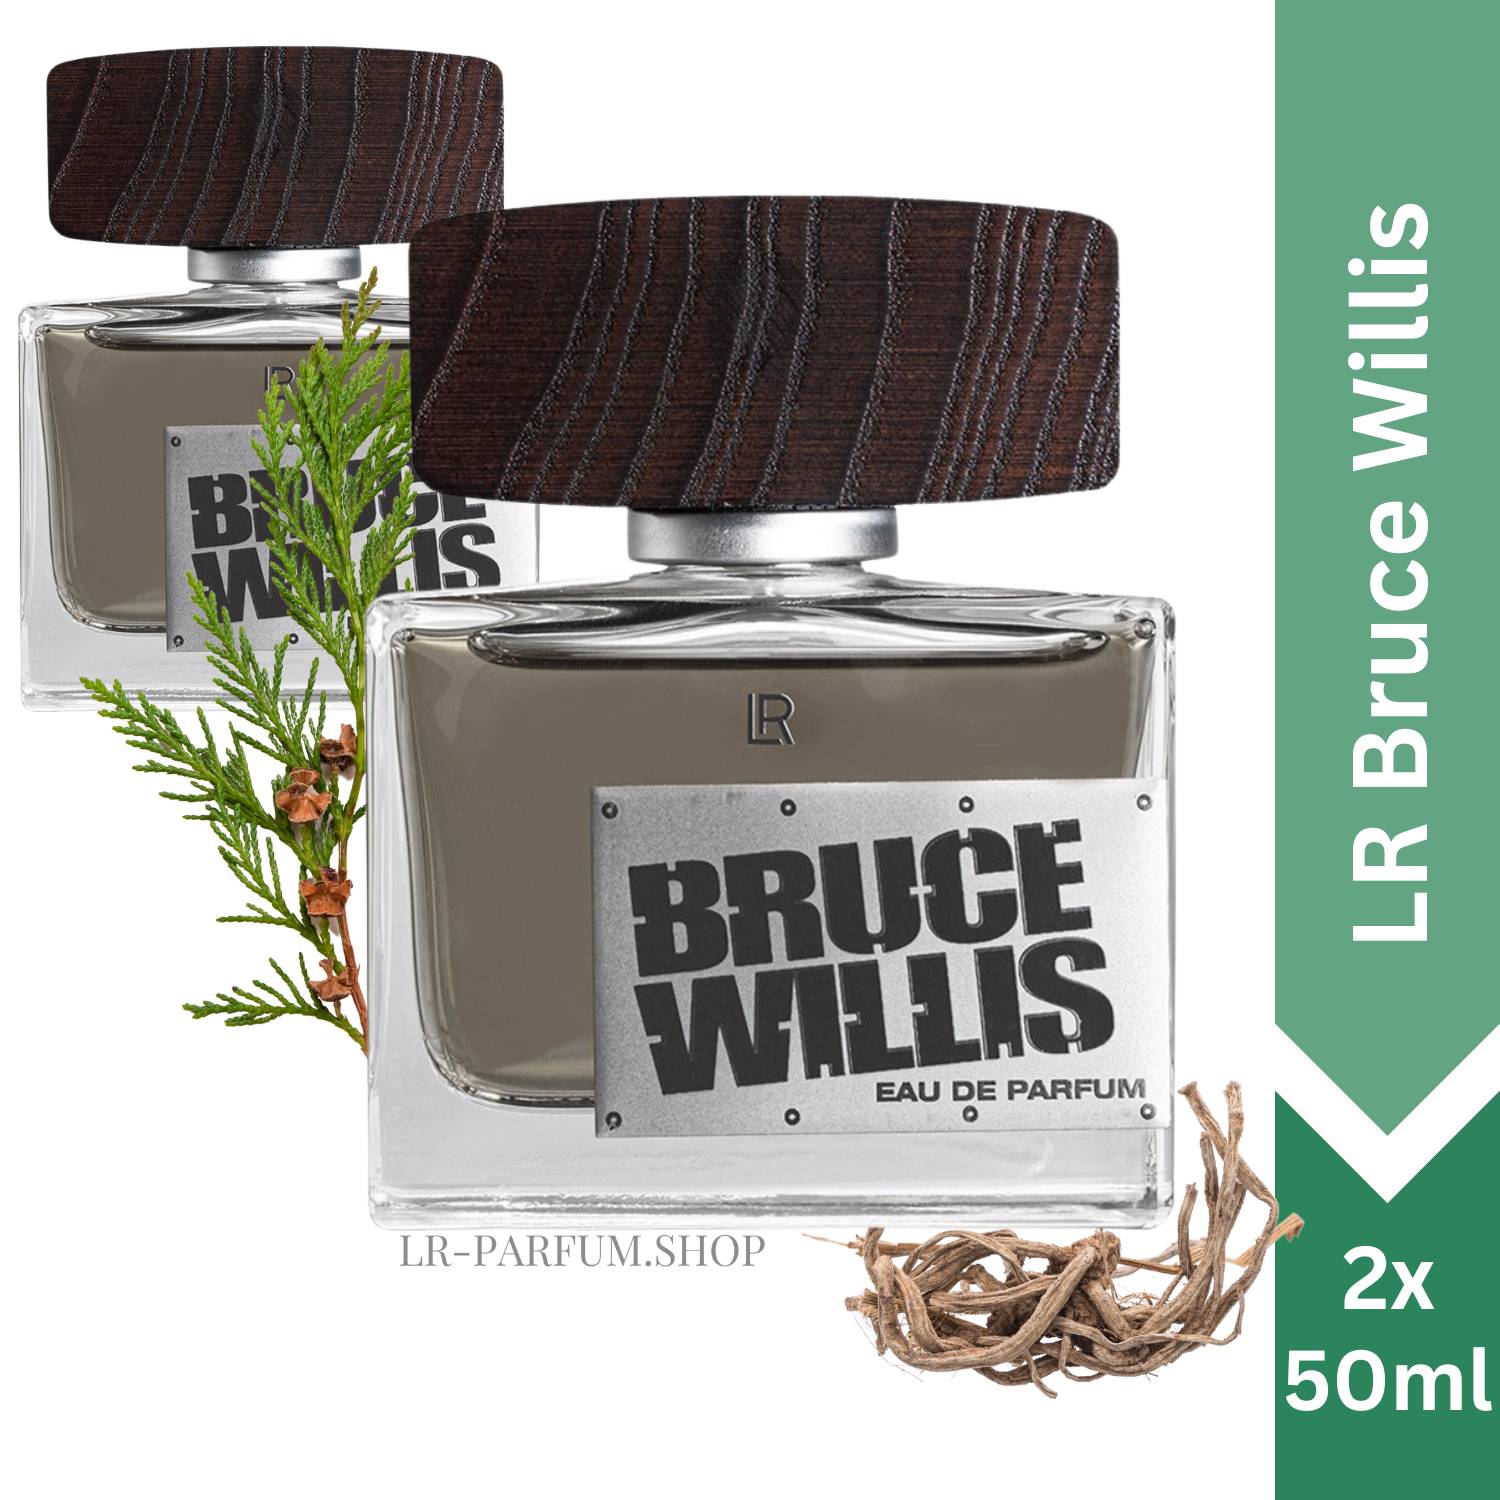 LR Bruce Willis - Eau de Parfum 50ml, 2er Pack (2x50ml) - LR-Parfum.shop